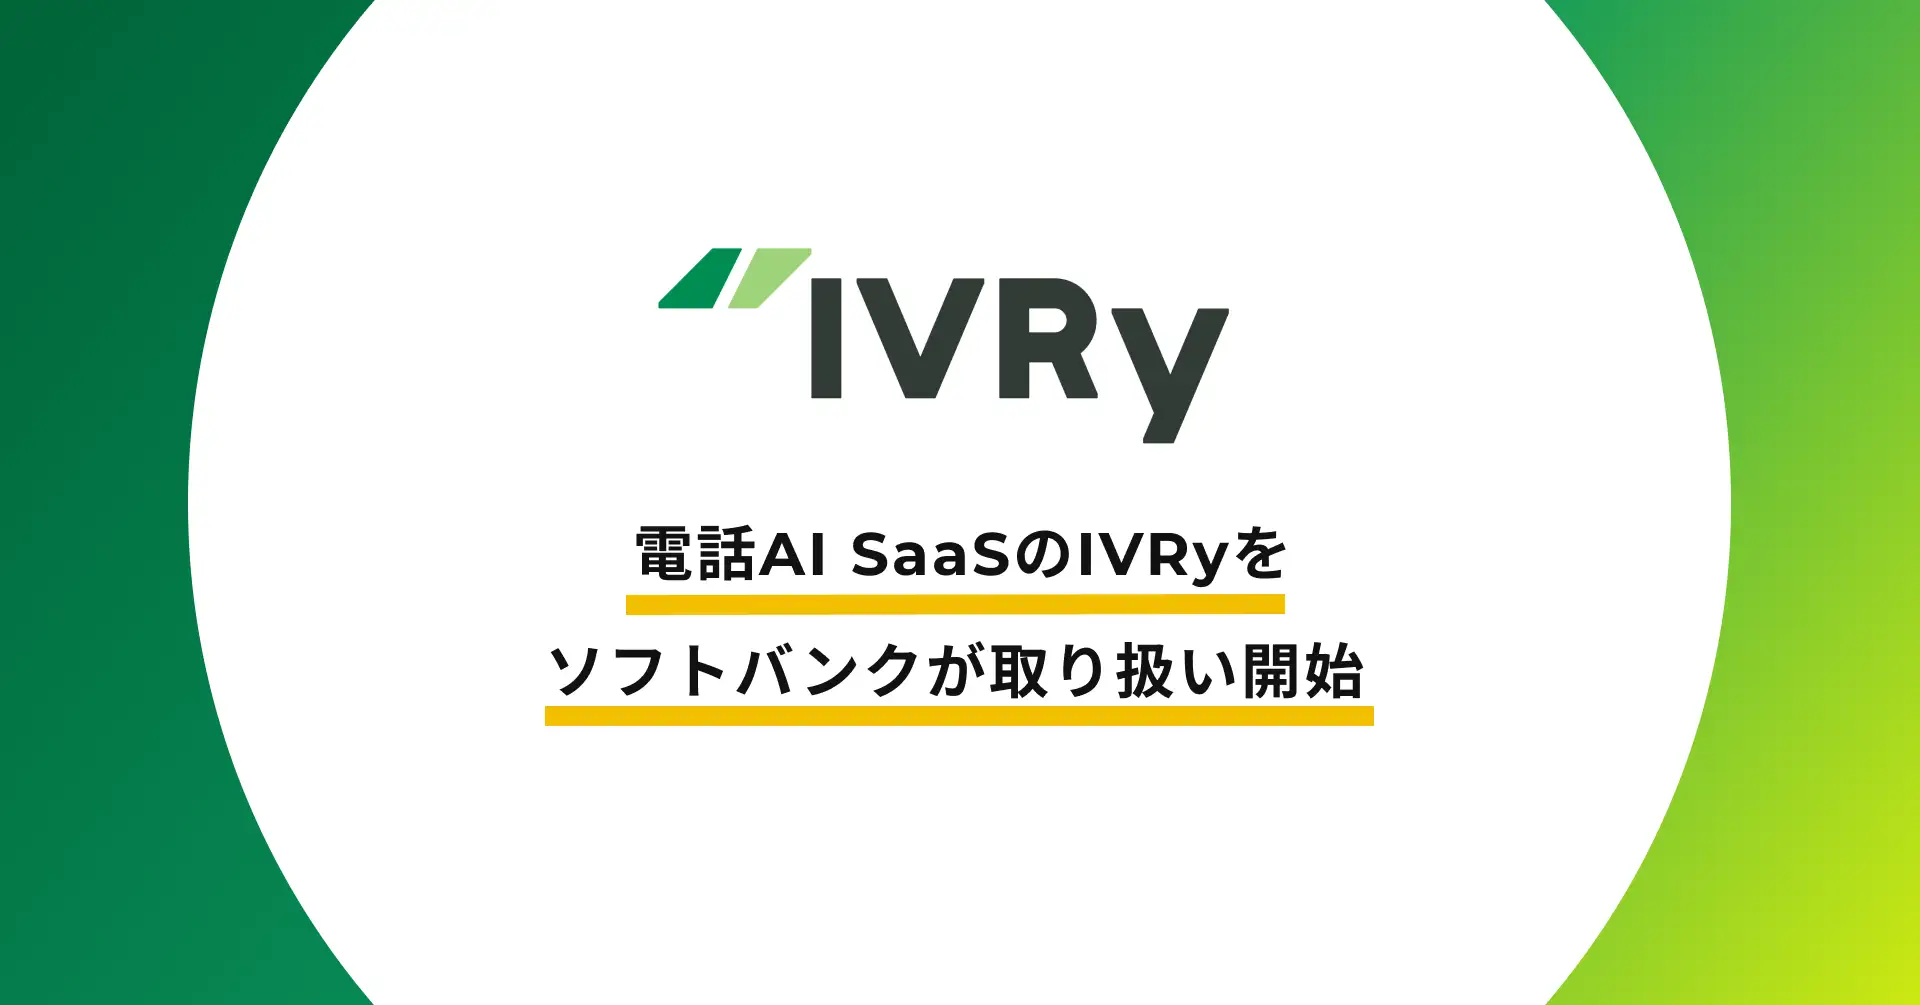 株式会社IVRy（本社：東京都台東区、代表取締役/CEO：奥西亮賀、以下「当社」）はこの度、ソフトバンク株式会社（以下「ソフトバンク」）と、電話自動応答サービス「IVRy（アイブリー）」に関する販売代理契約（紹介あっせん型）を締結しました。これにより、IVRyは中小企業から大手企業まで日本全国の事業者の電話DXを通じた業務効率化をさらに推進してまいります。